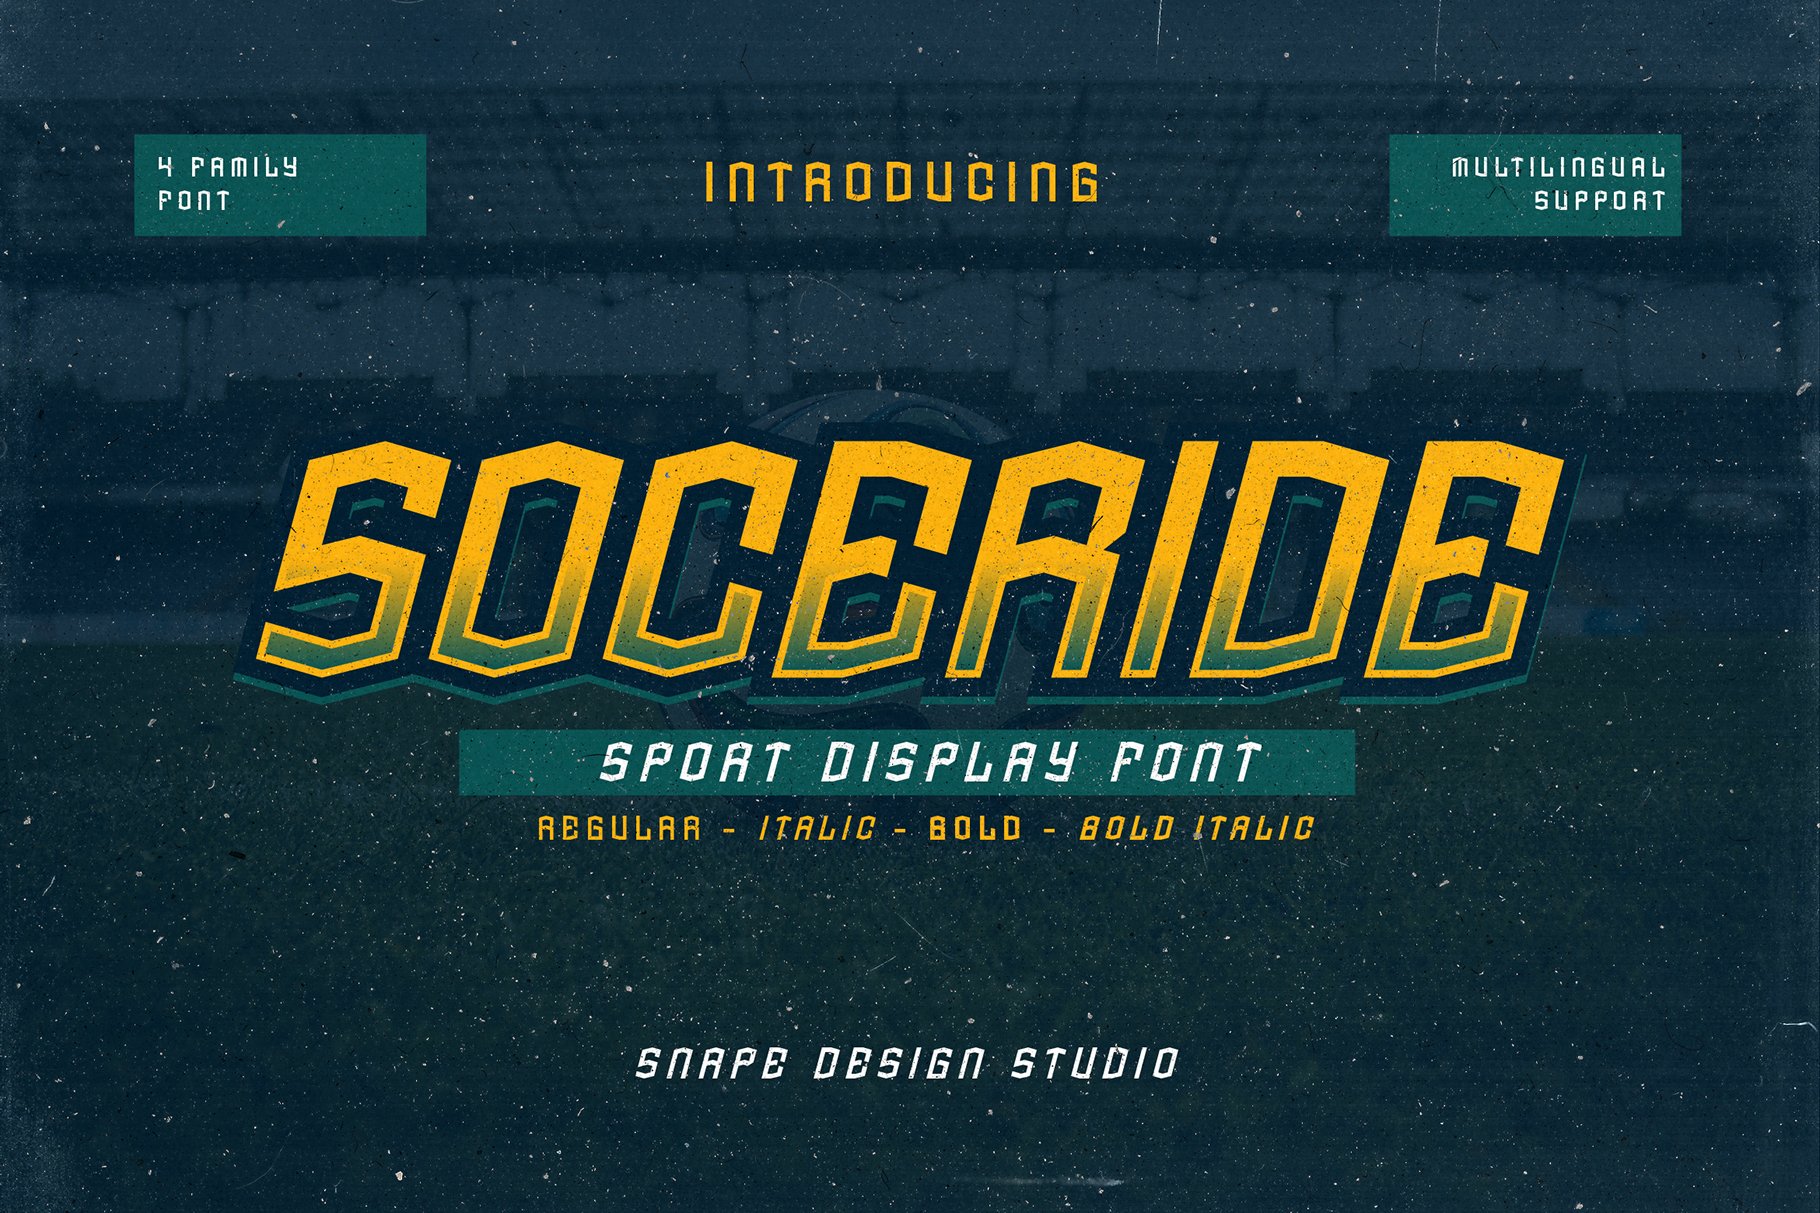 Soceride - Sport Font cover image.